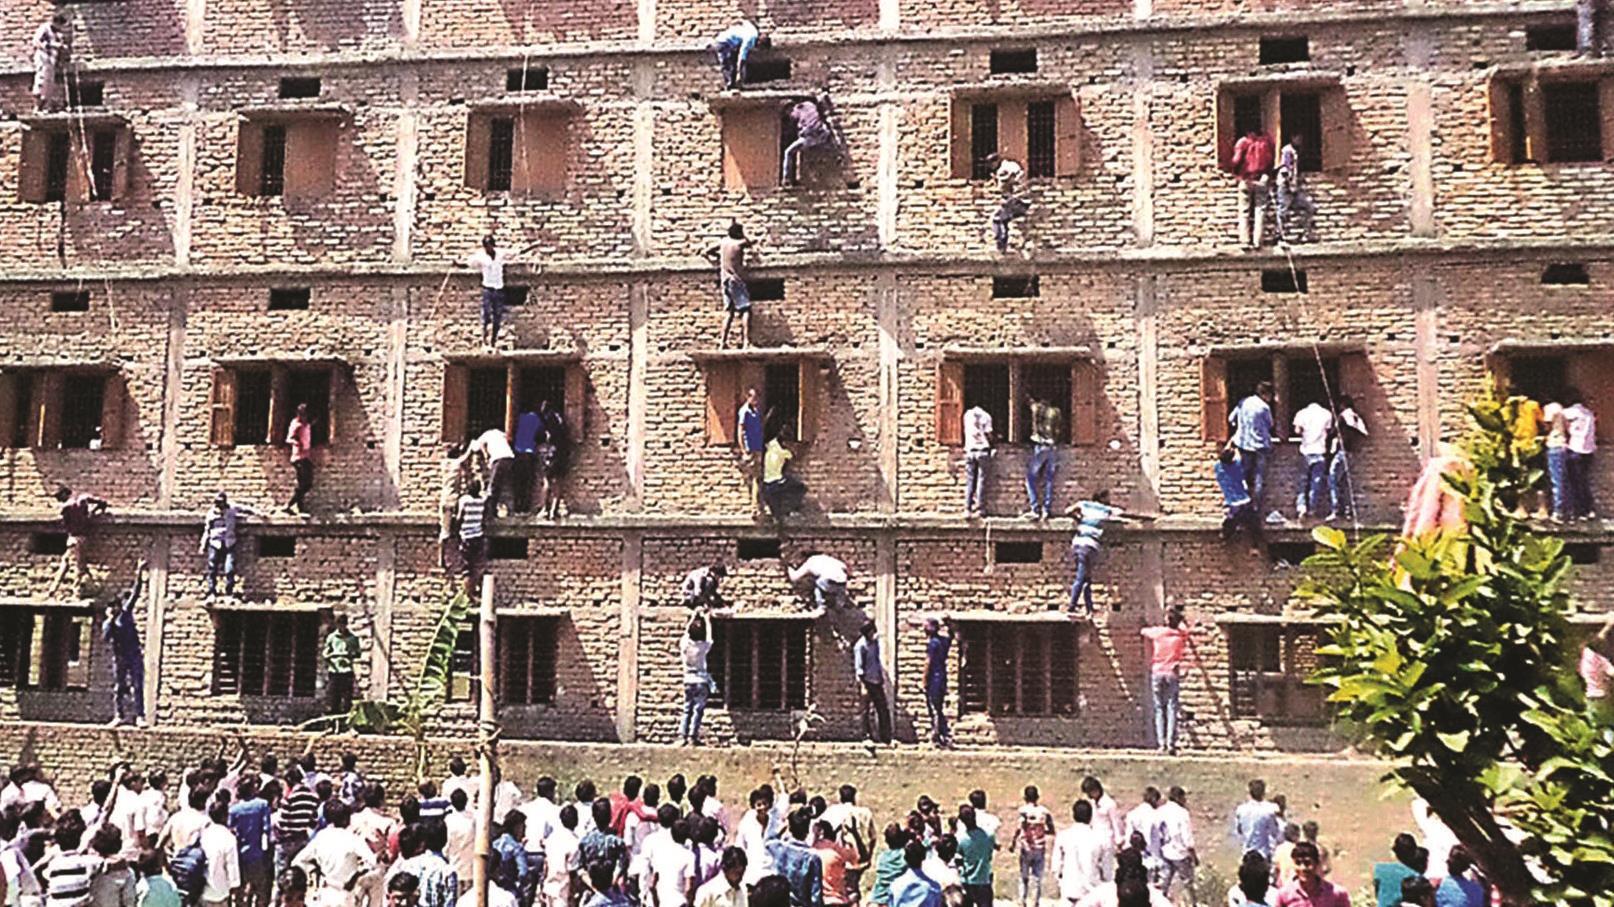 134781_Bihar-exam-building_GettyImages-467607846_creditSTRDEL_AFP_Getty-Images---Hero.jpg